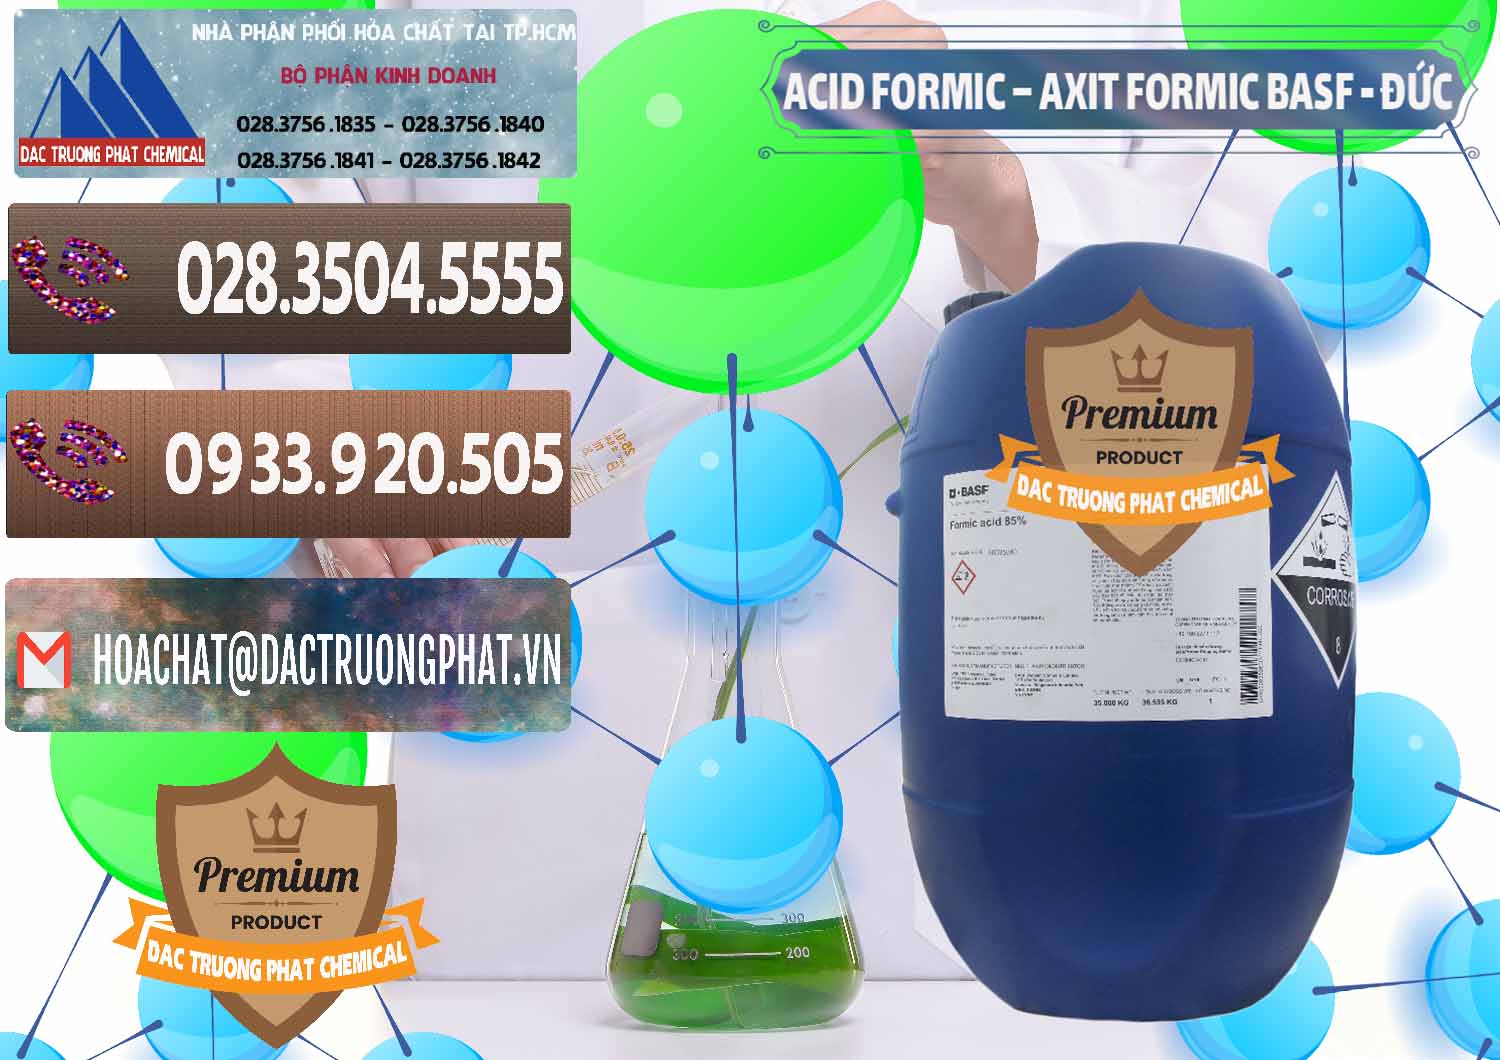 Công ty bán và cung cấp Acid Formic - Axit Formic BASF Đức Germany - 0028 - Kinh doanh _ phân phối hóa chất tại TP.HCM - hoachatviet.net